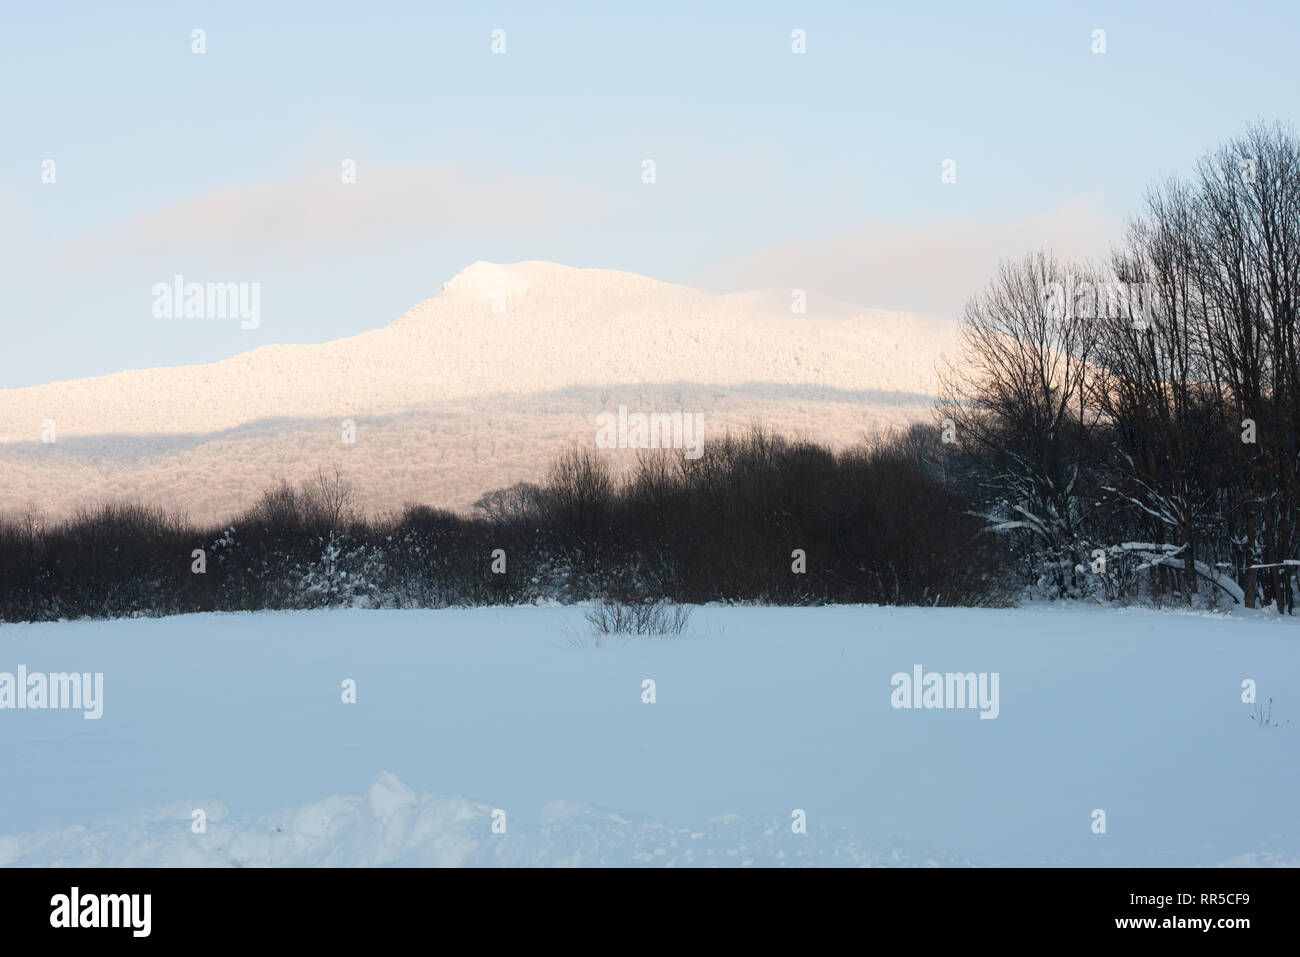 Bieszczady Mountains. A view over Hnatowe Berdo peak of Połonina Wetlińska range. winter snowy landscape. Snow-capped peak. Stock Photo